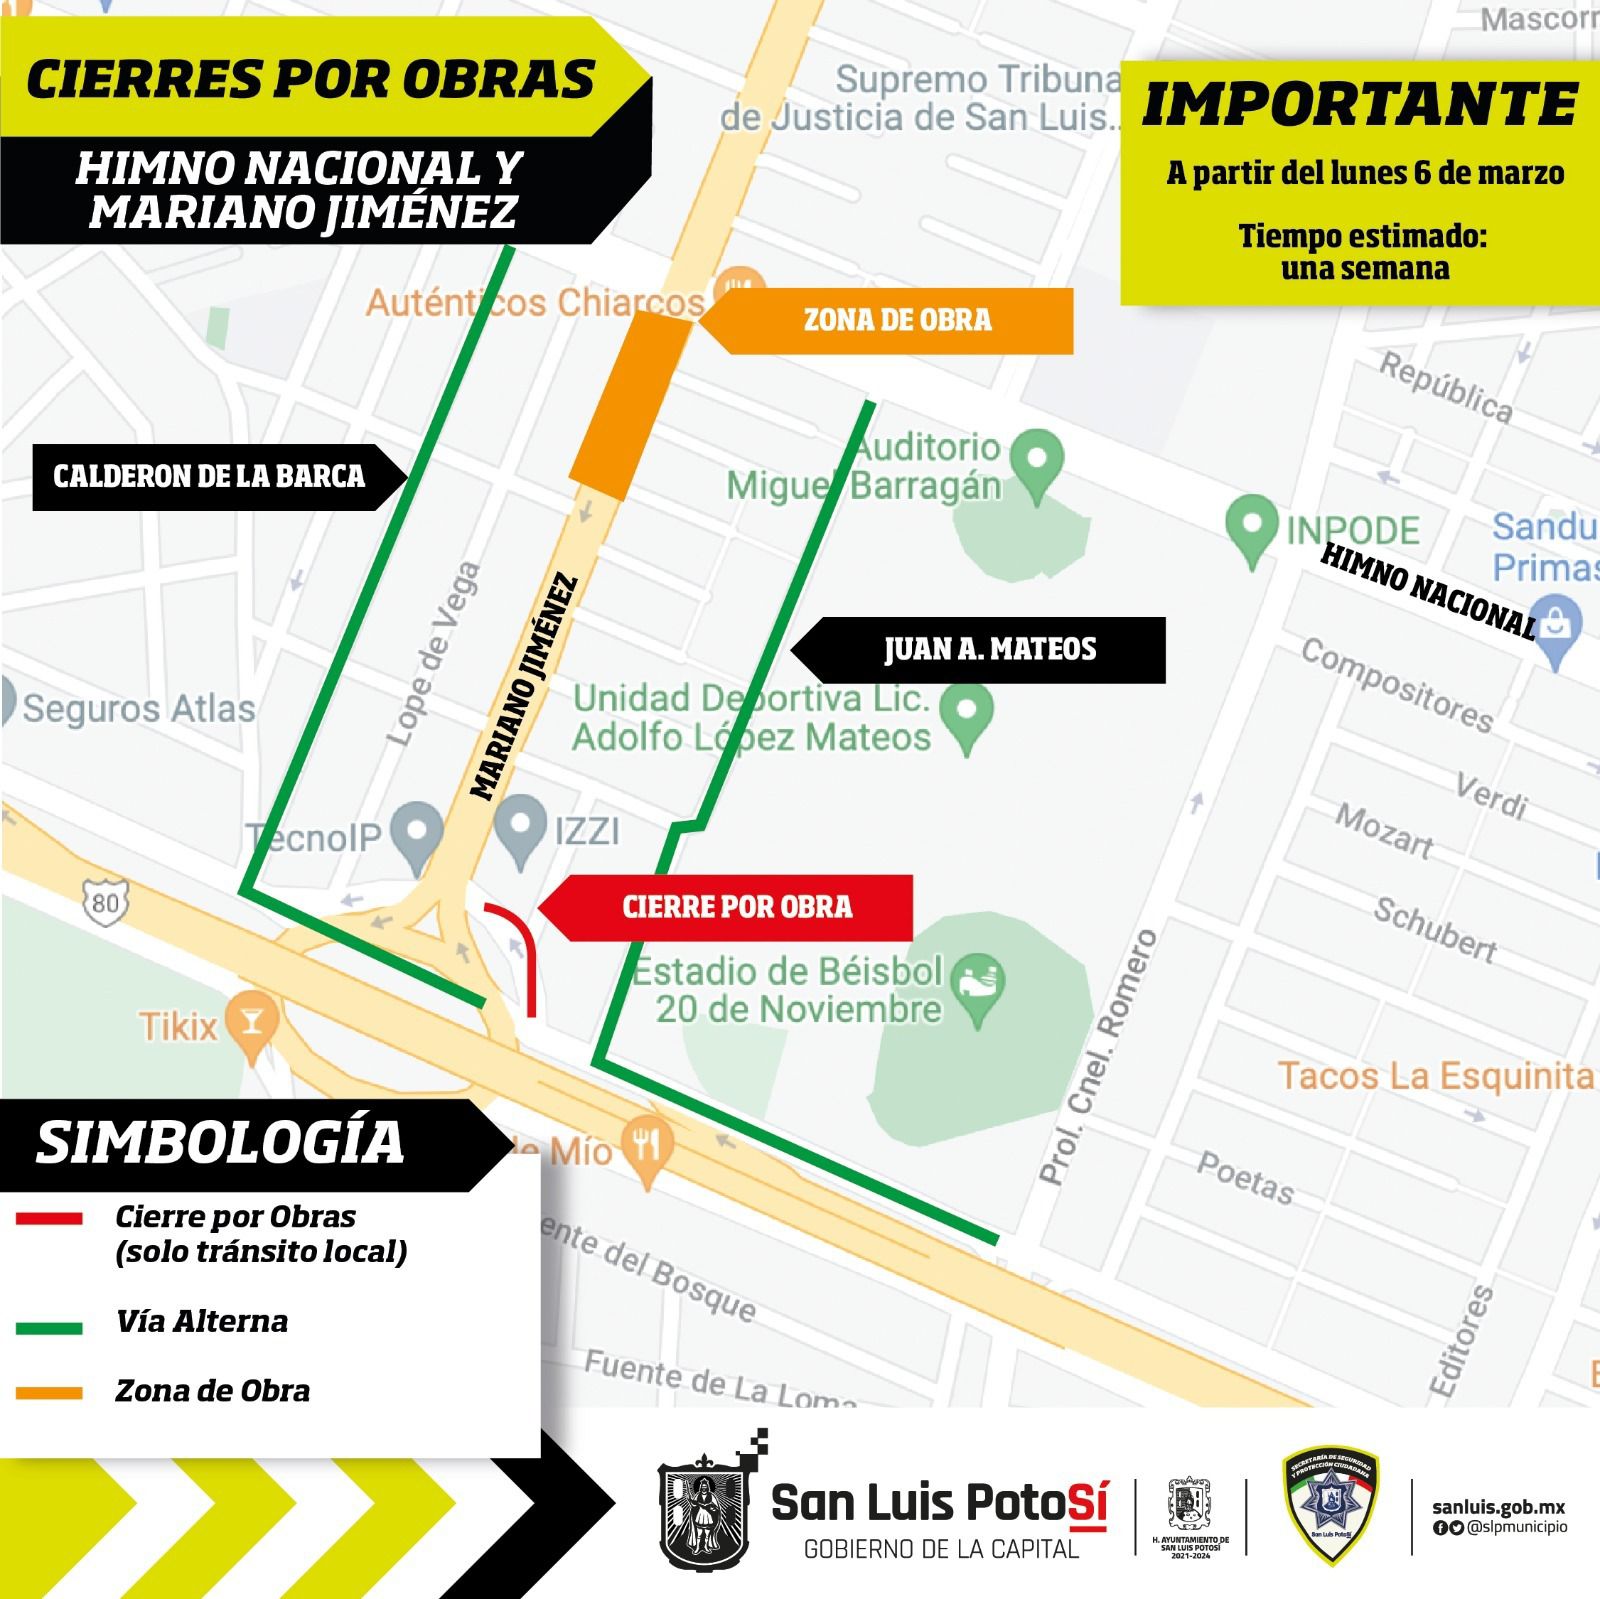  Policía Vial de la Capital activará dispositivo de vialidad por avances en obras de avenida Himno Nacional y Mariano Jiménez